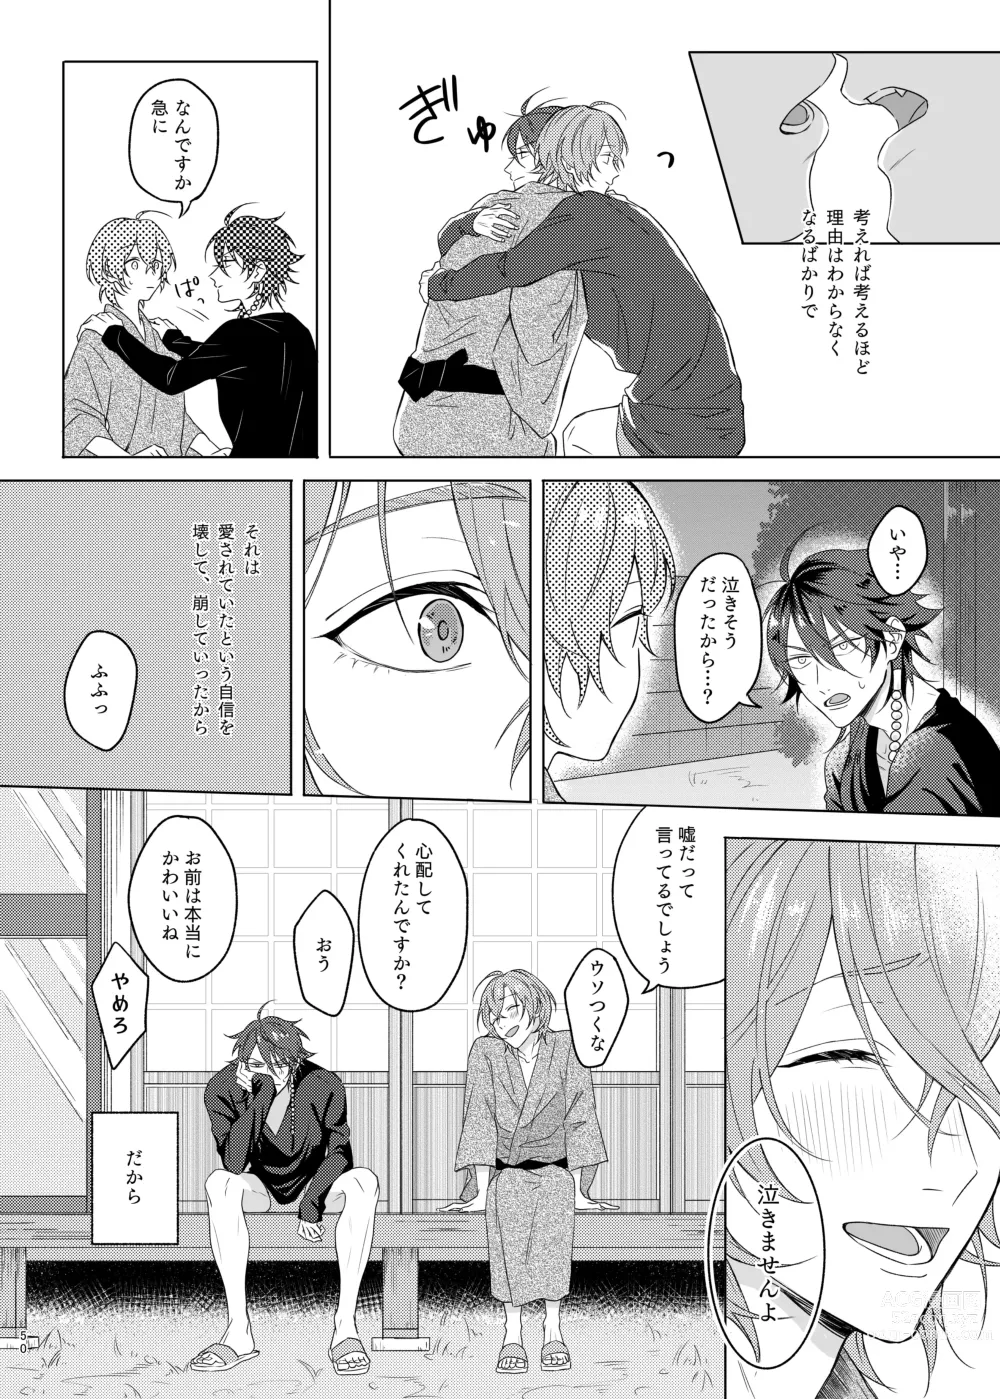 Page 50 of doujinshi Kami sama no ko